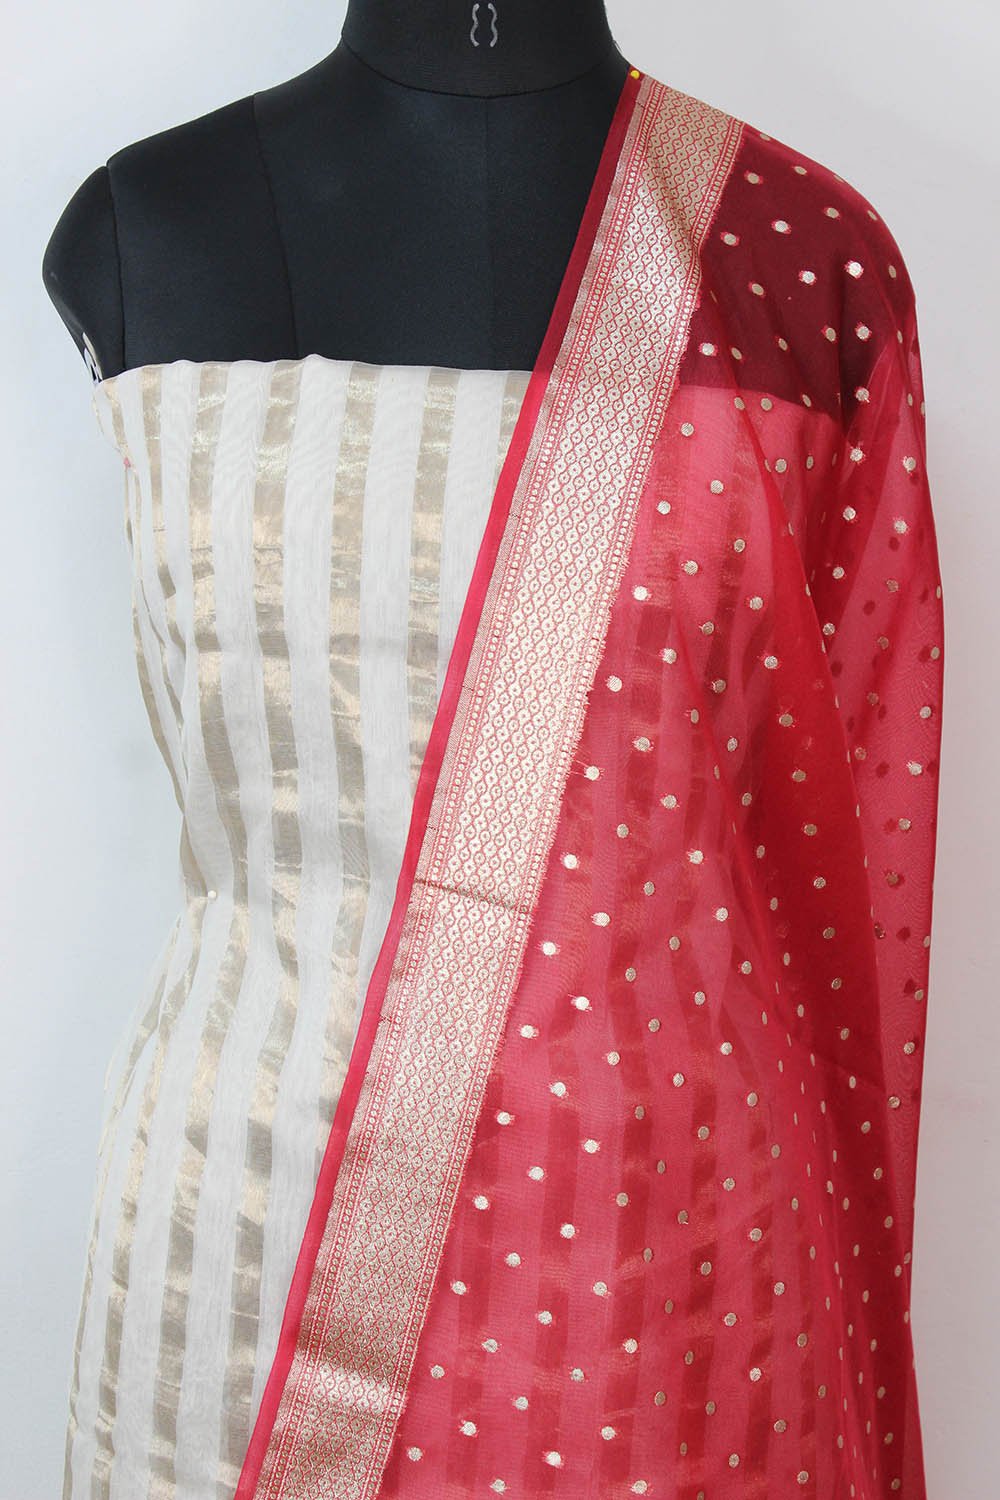 Off White Banarasi Chanderi Silk Suit With Red Banarasi Organza Dupatta